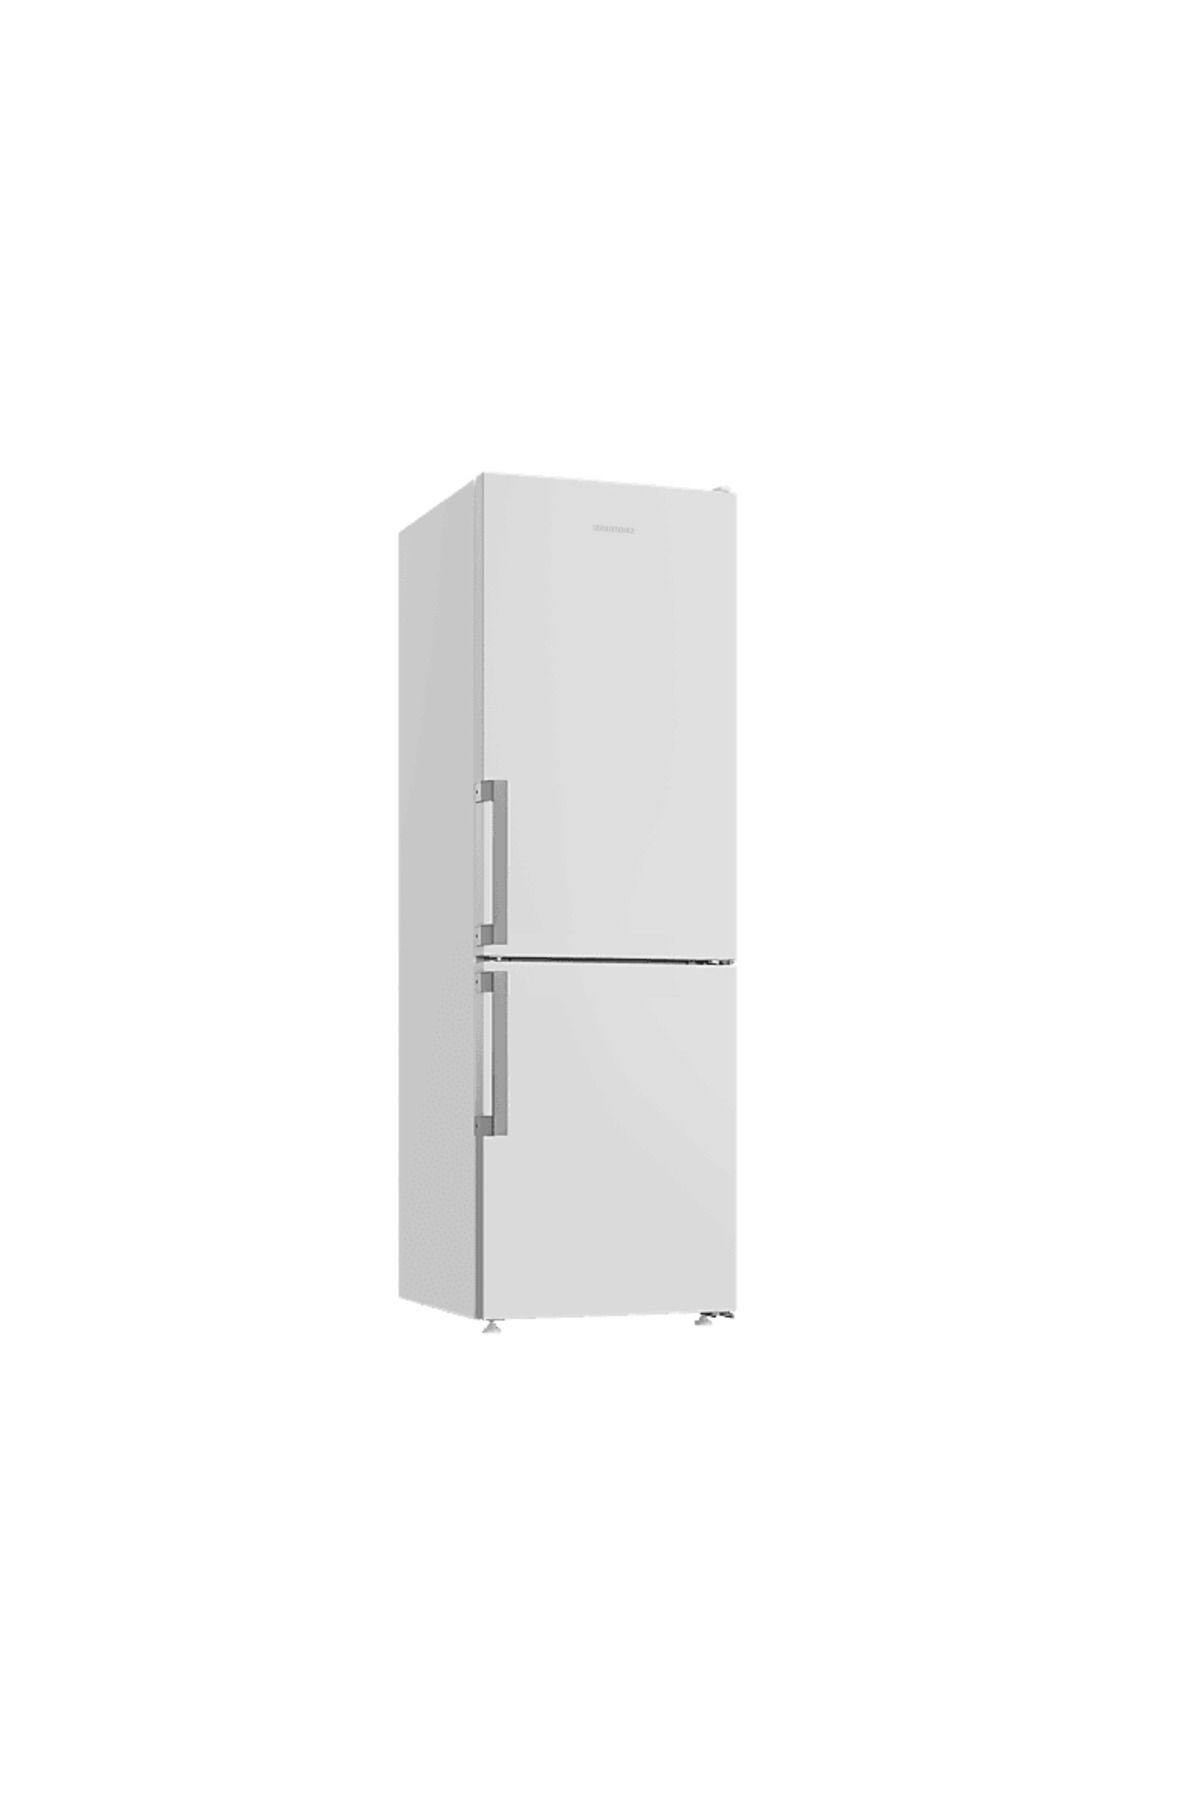 Grundig GPKNE 316 E Enerji Sınıfı 316L Duo No-Frost Alttan Donduruculu Buzdolabı Beyaz